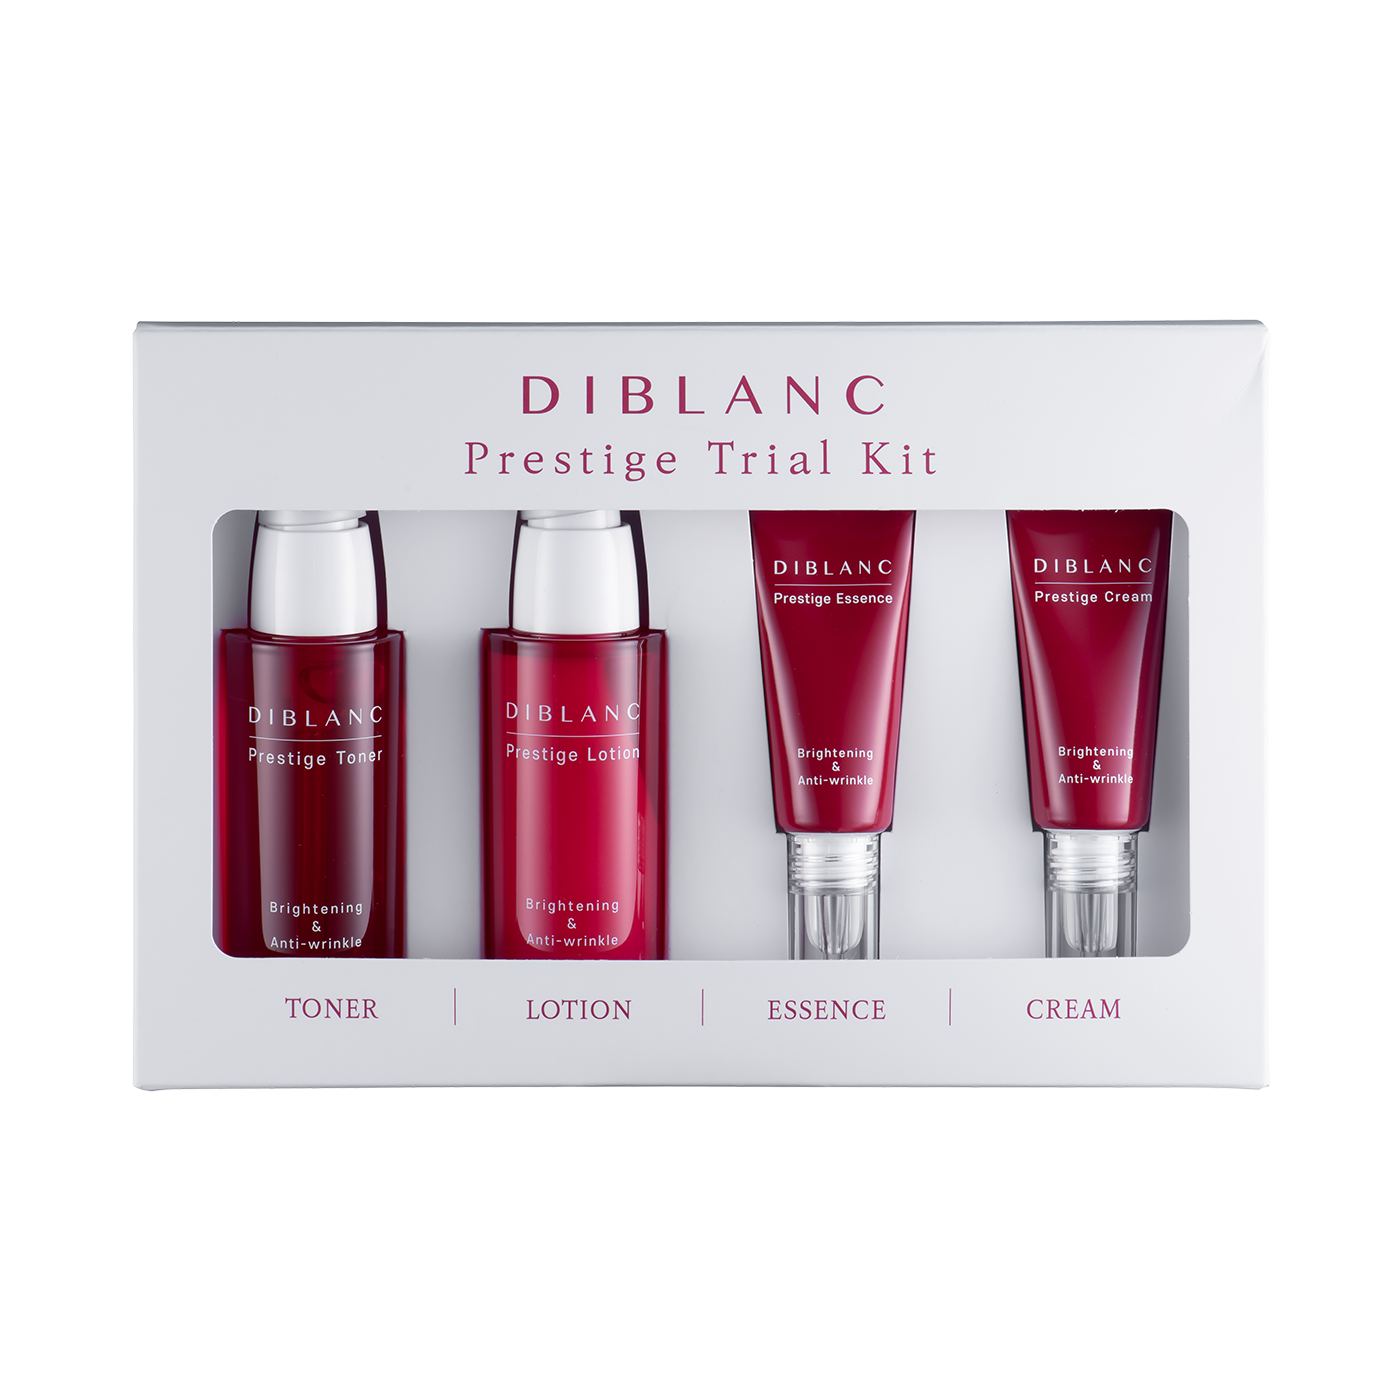 DIBLANC Prestige Trial Kit